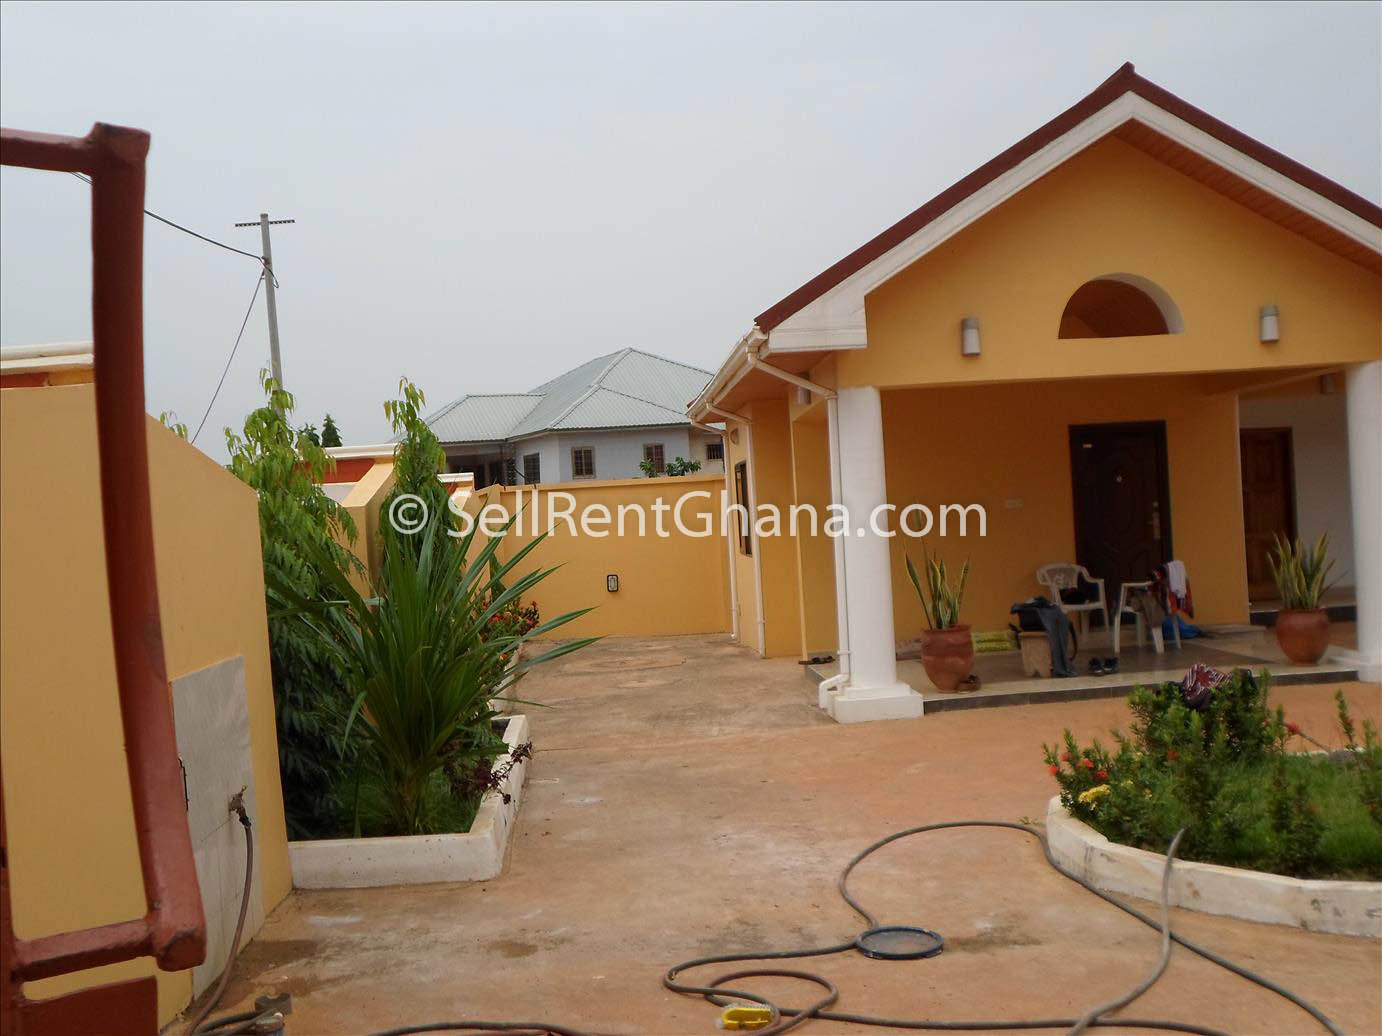 Bedroom House for Rent in East Legon | SellRent Ghana